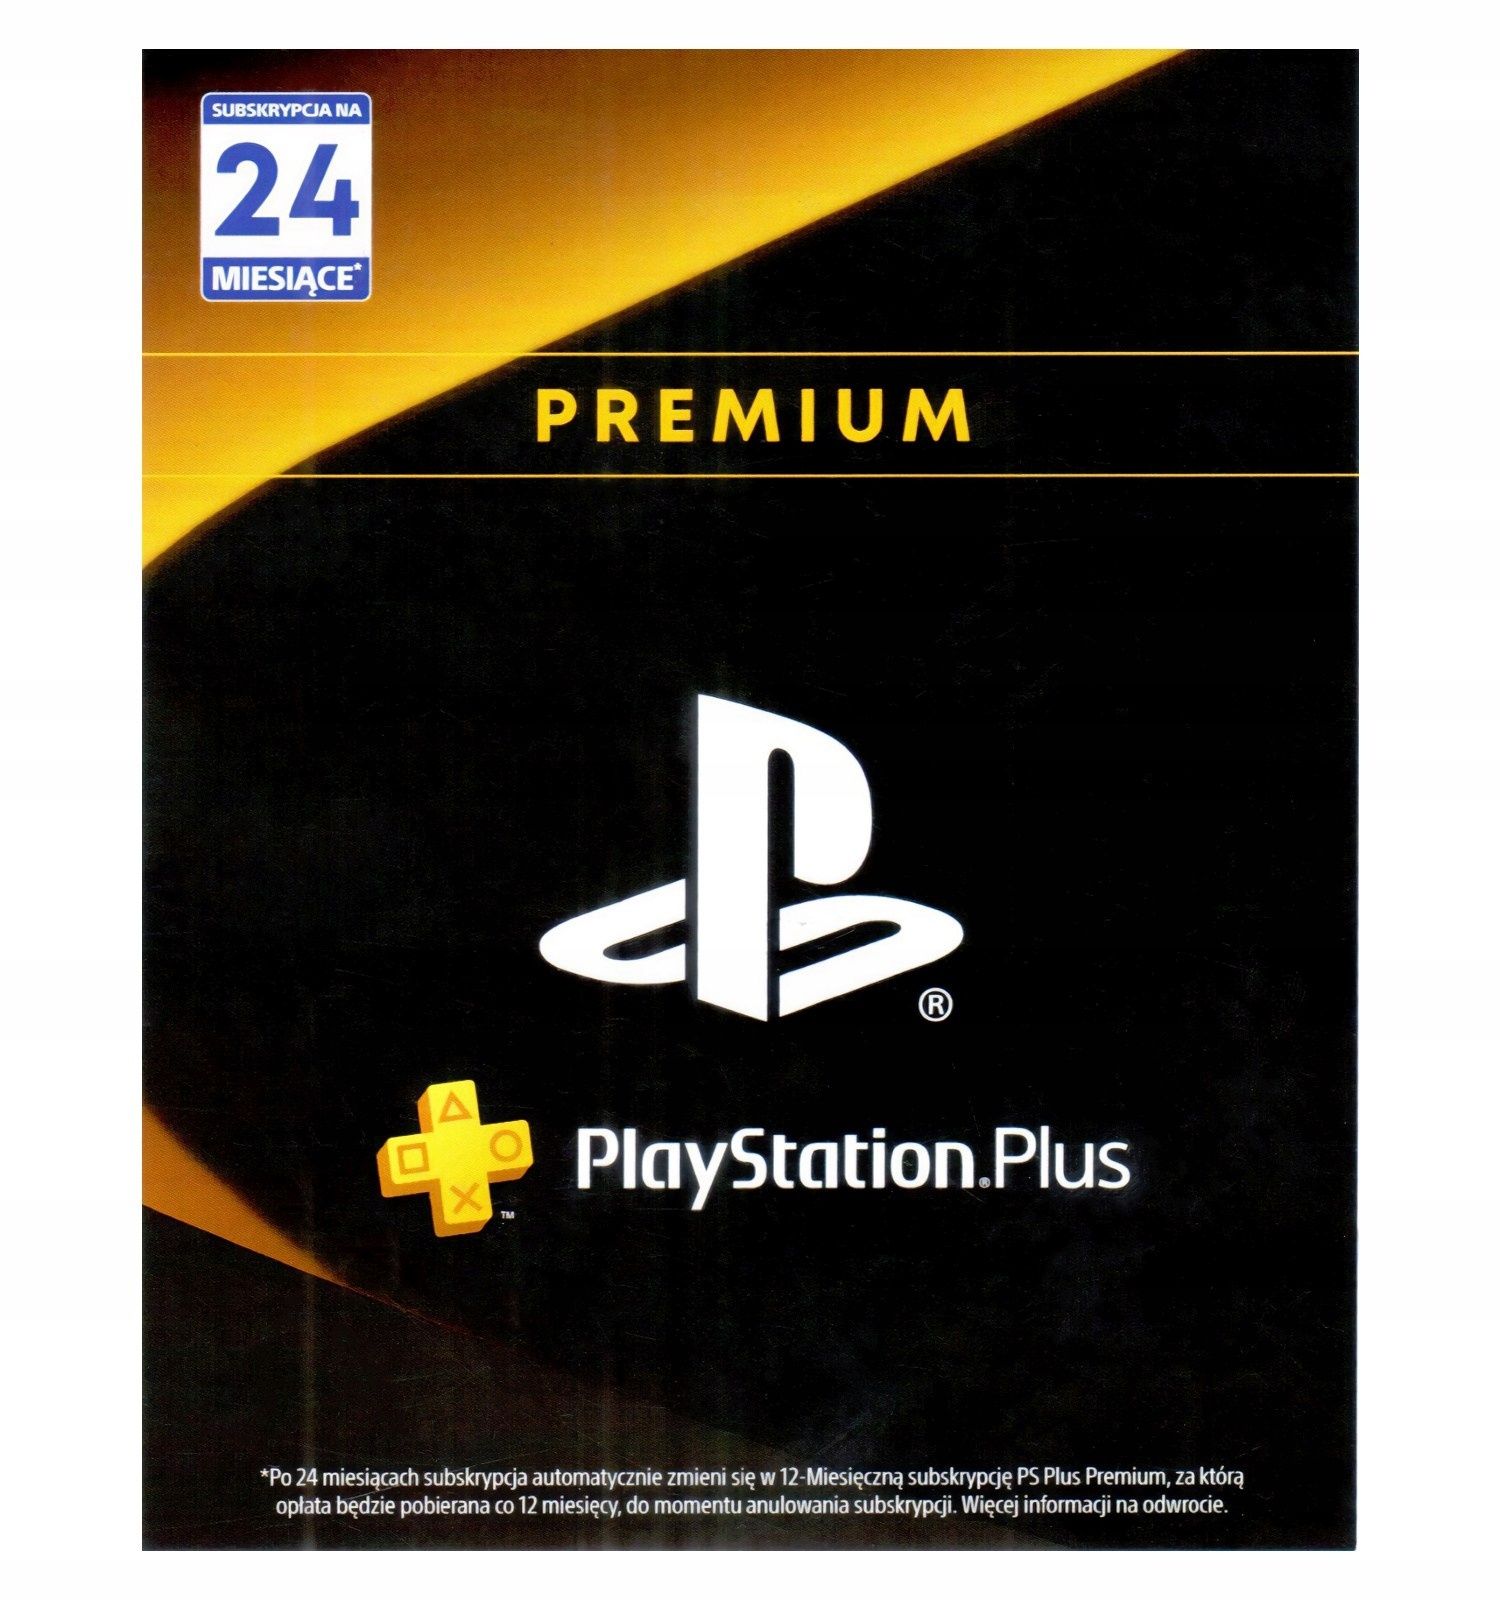 PlayStation premium plus ps+